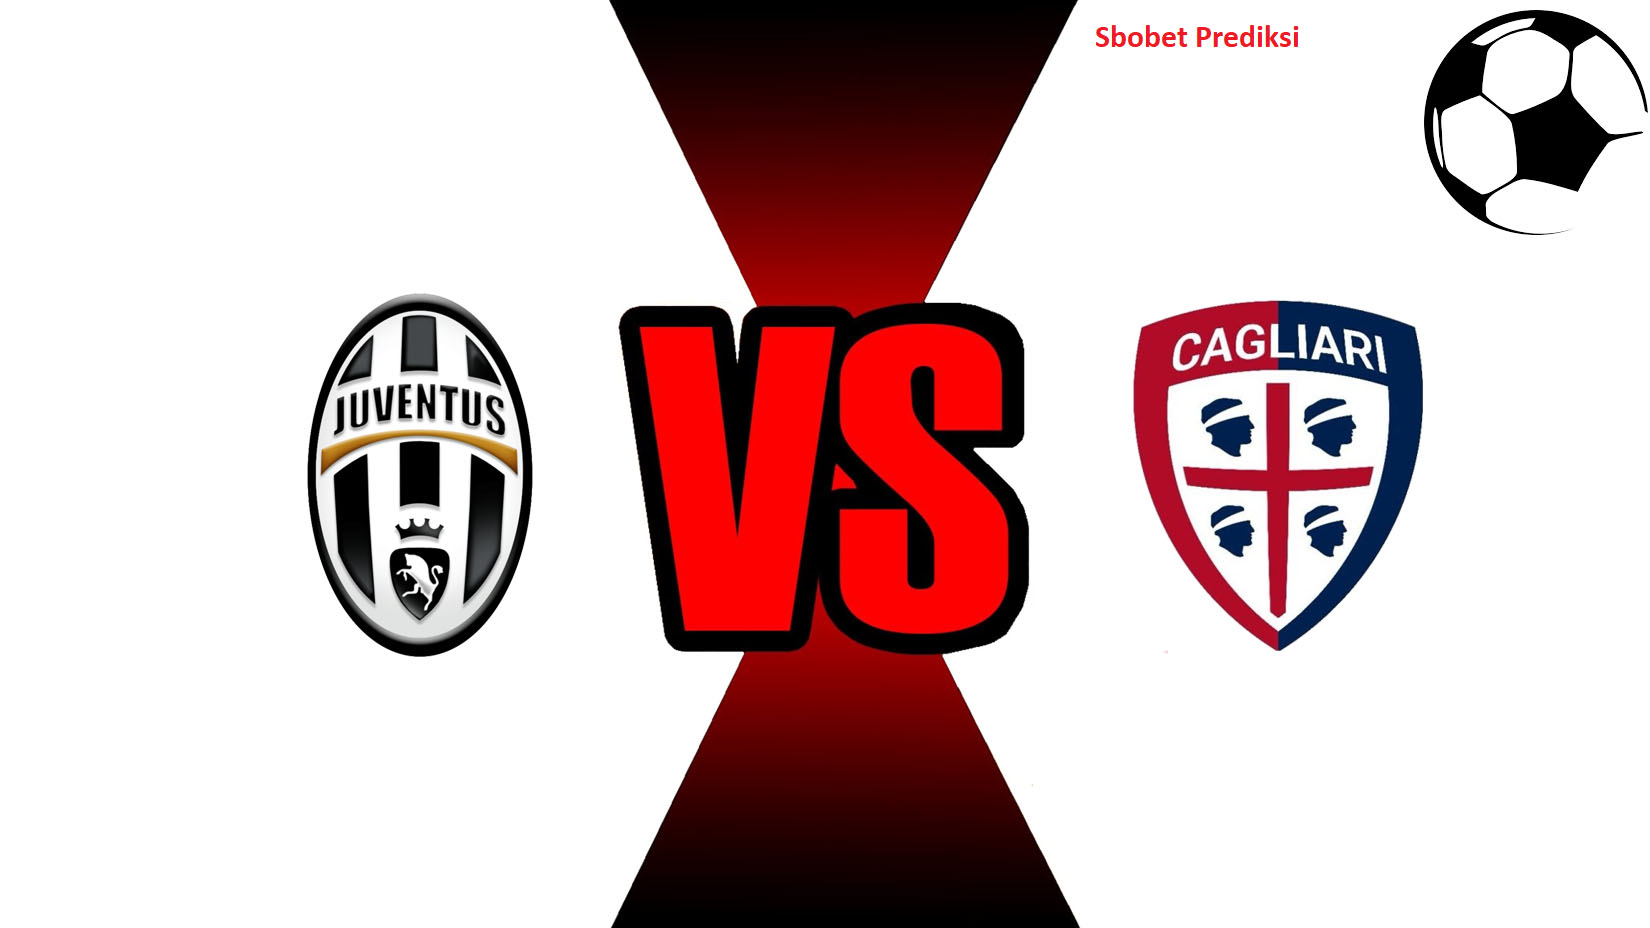 Prediksi Skor Bola Online Juventus vs Cagliari 4 November 2018